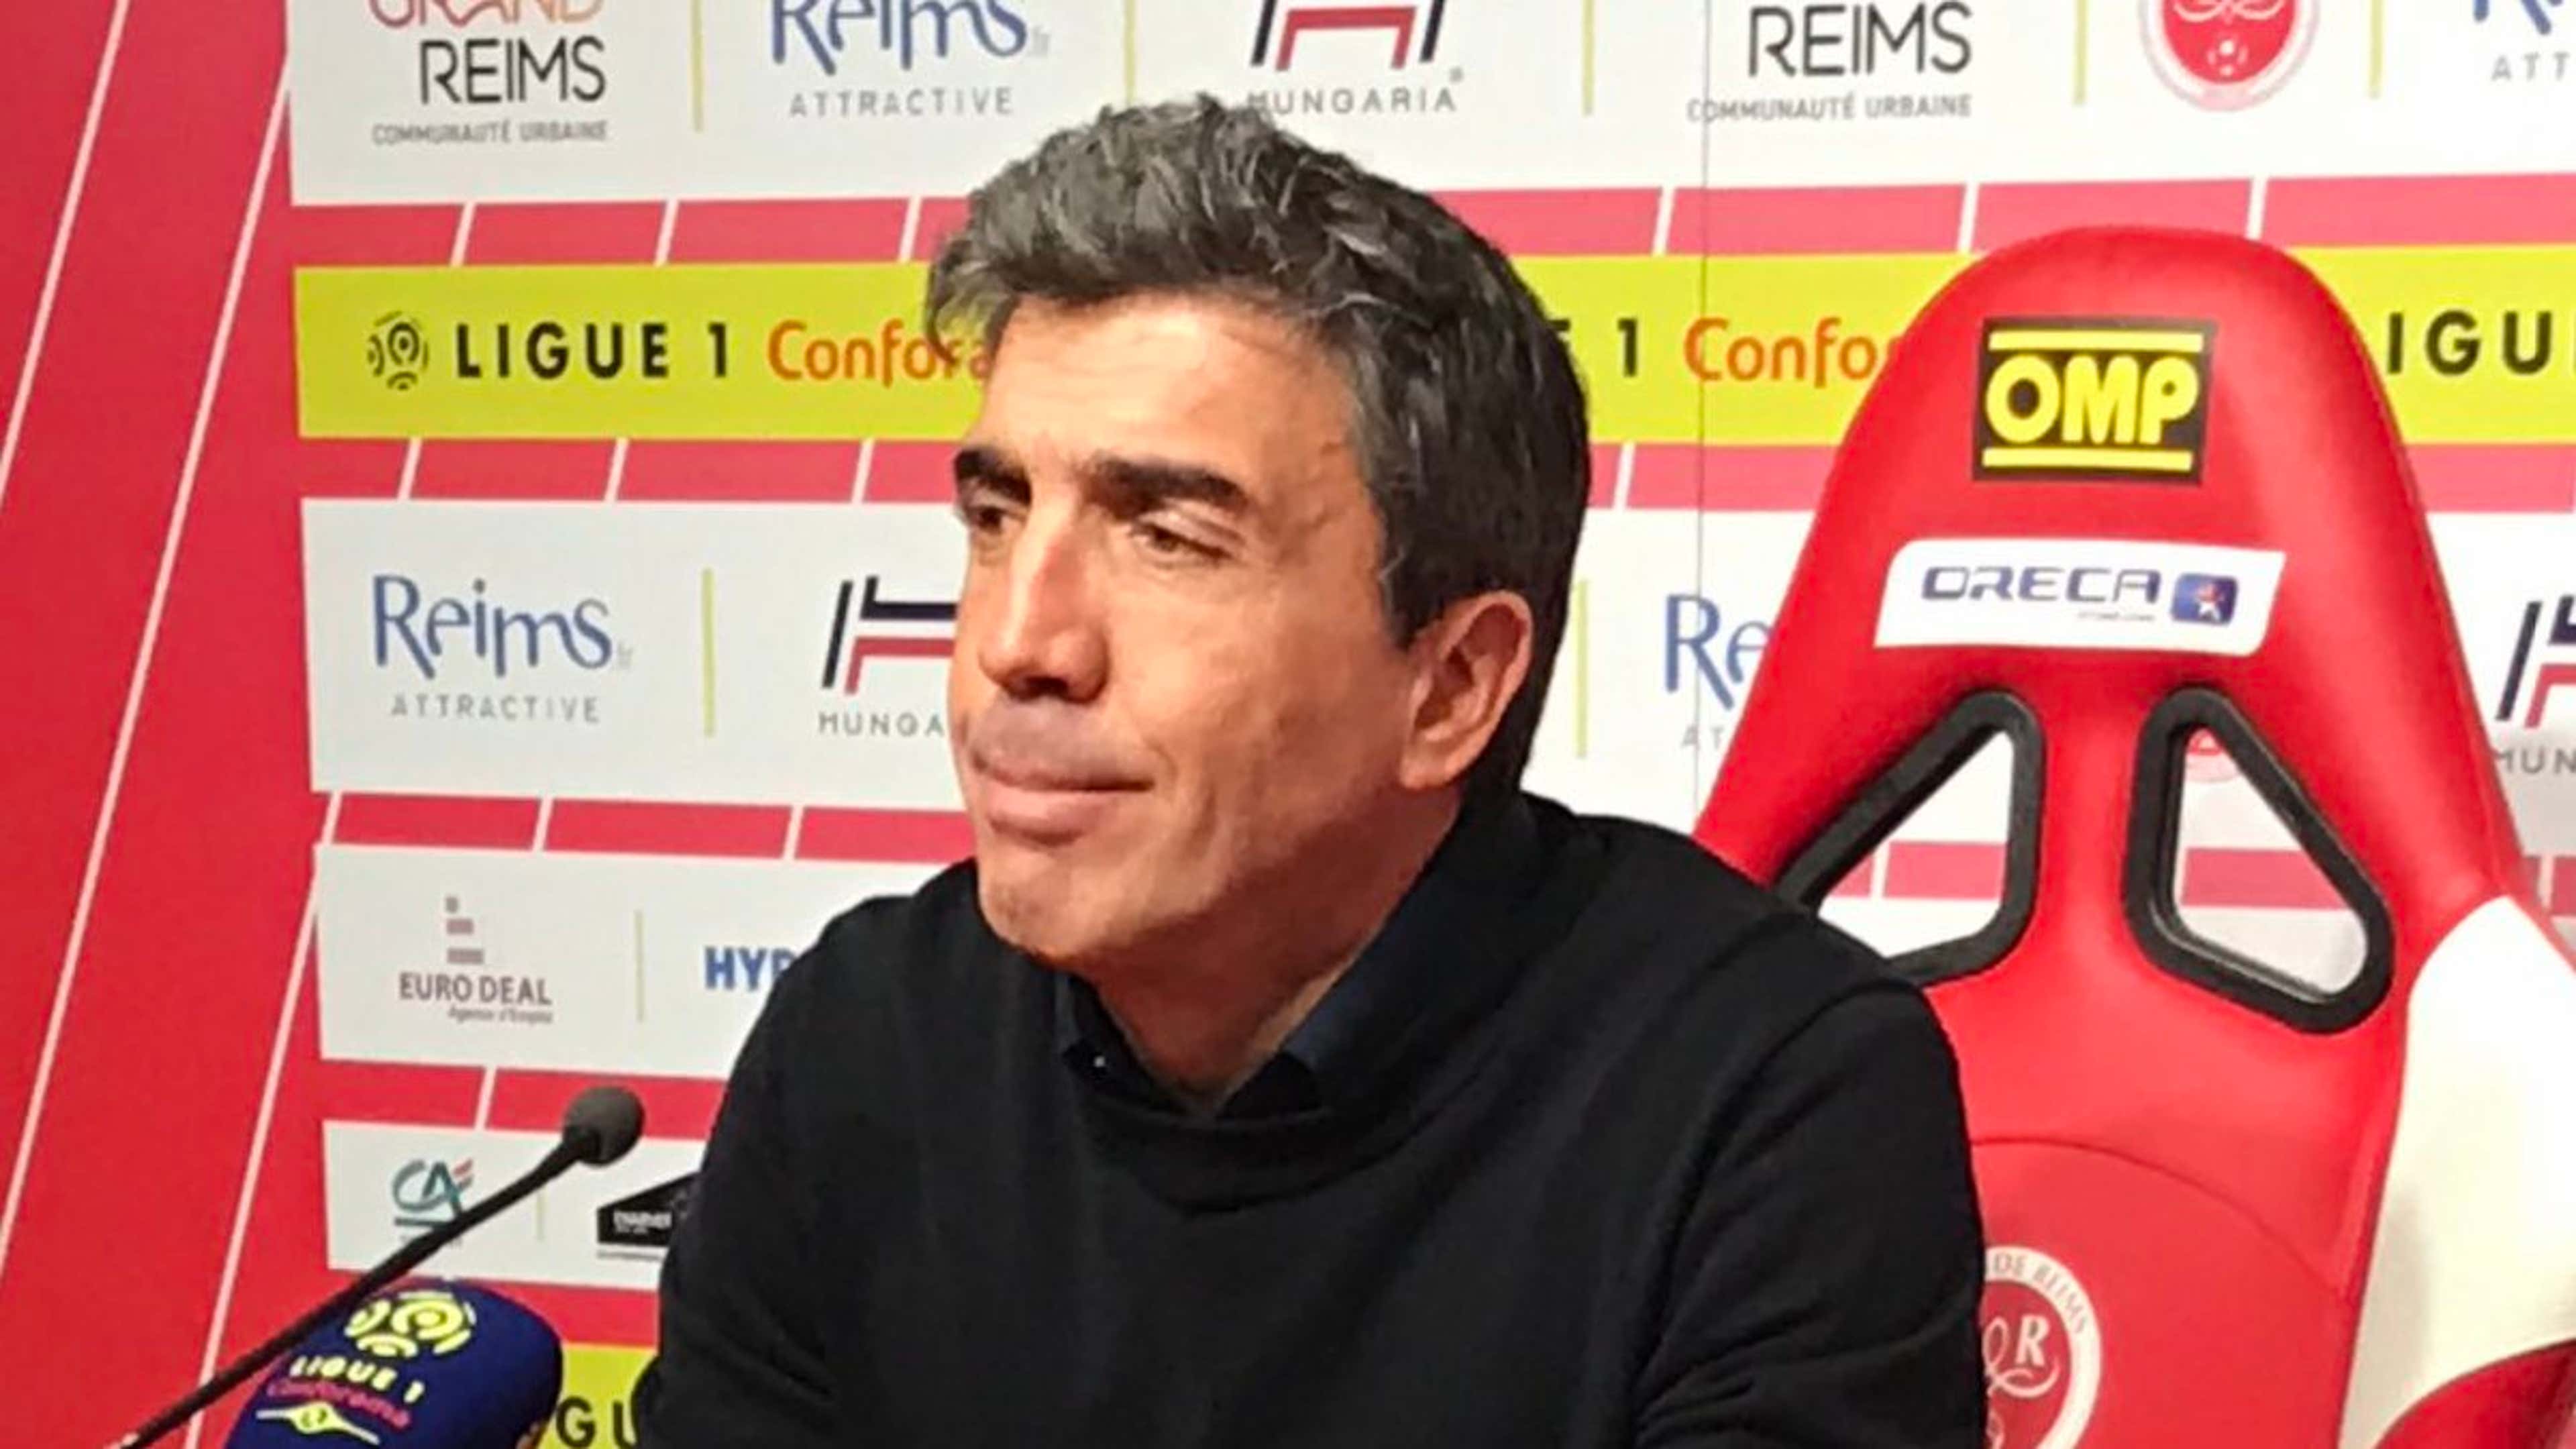 David Guion Reims Ligue 1